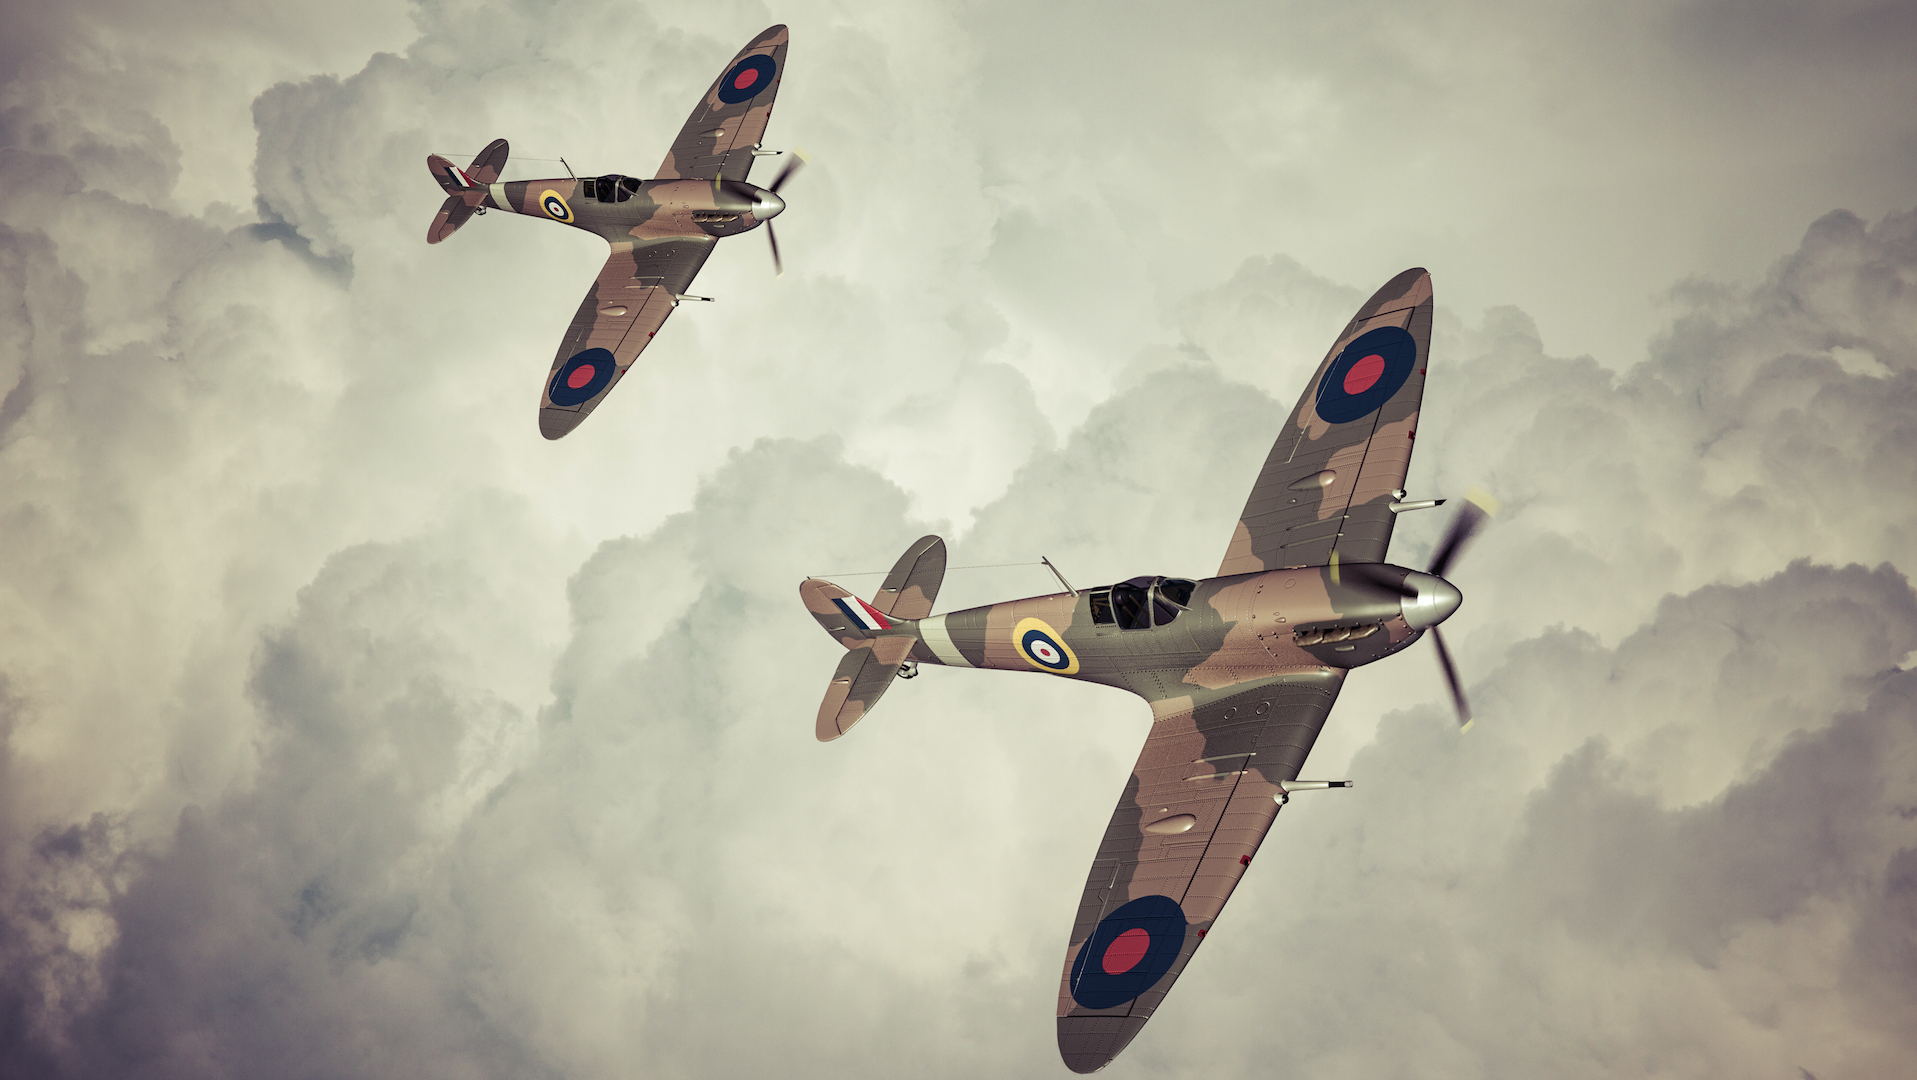 RAF Spitfire fighter planes